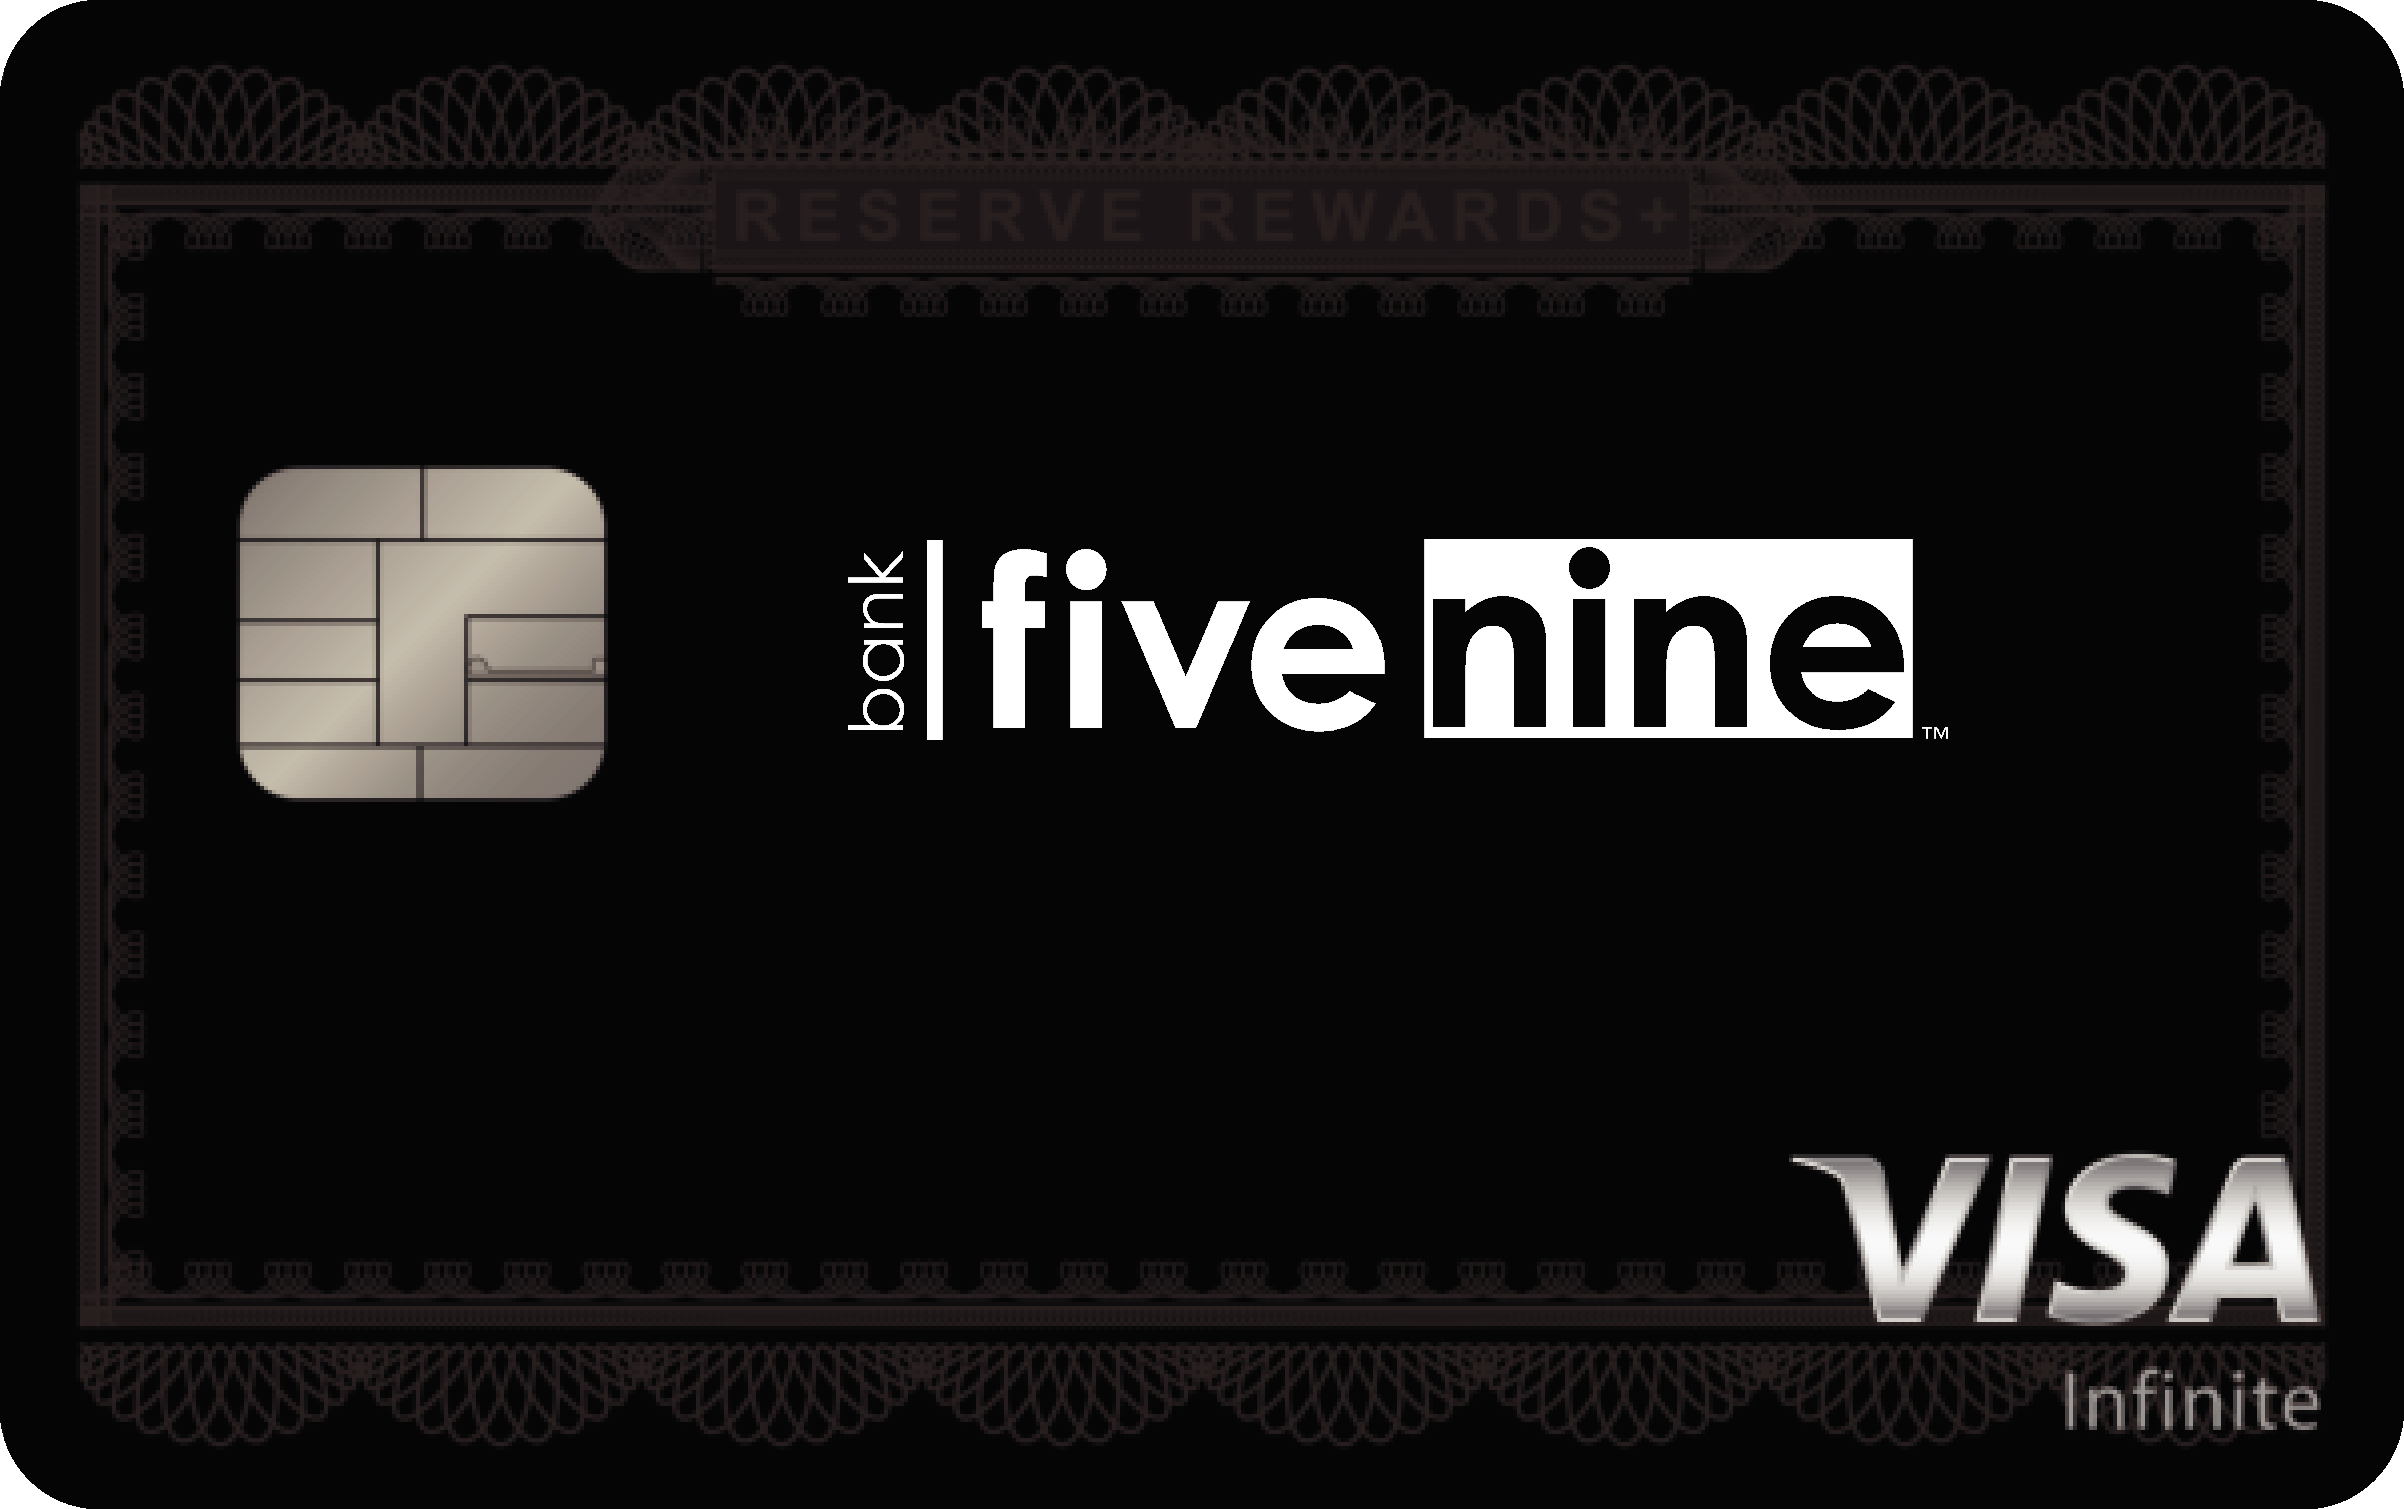 Bank Five Nine Reserve Rewards+ Card